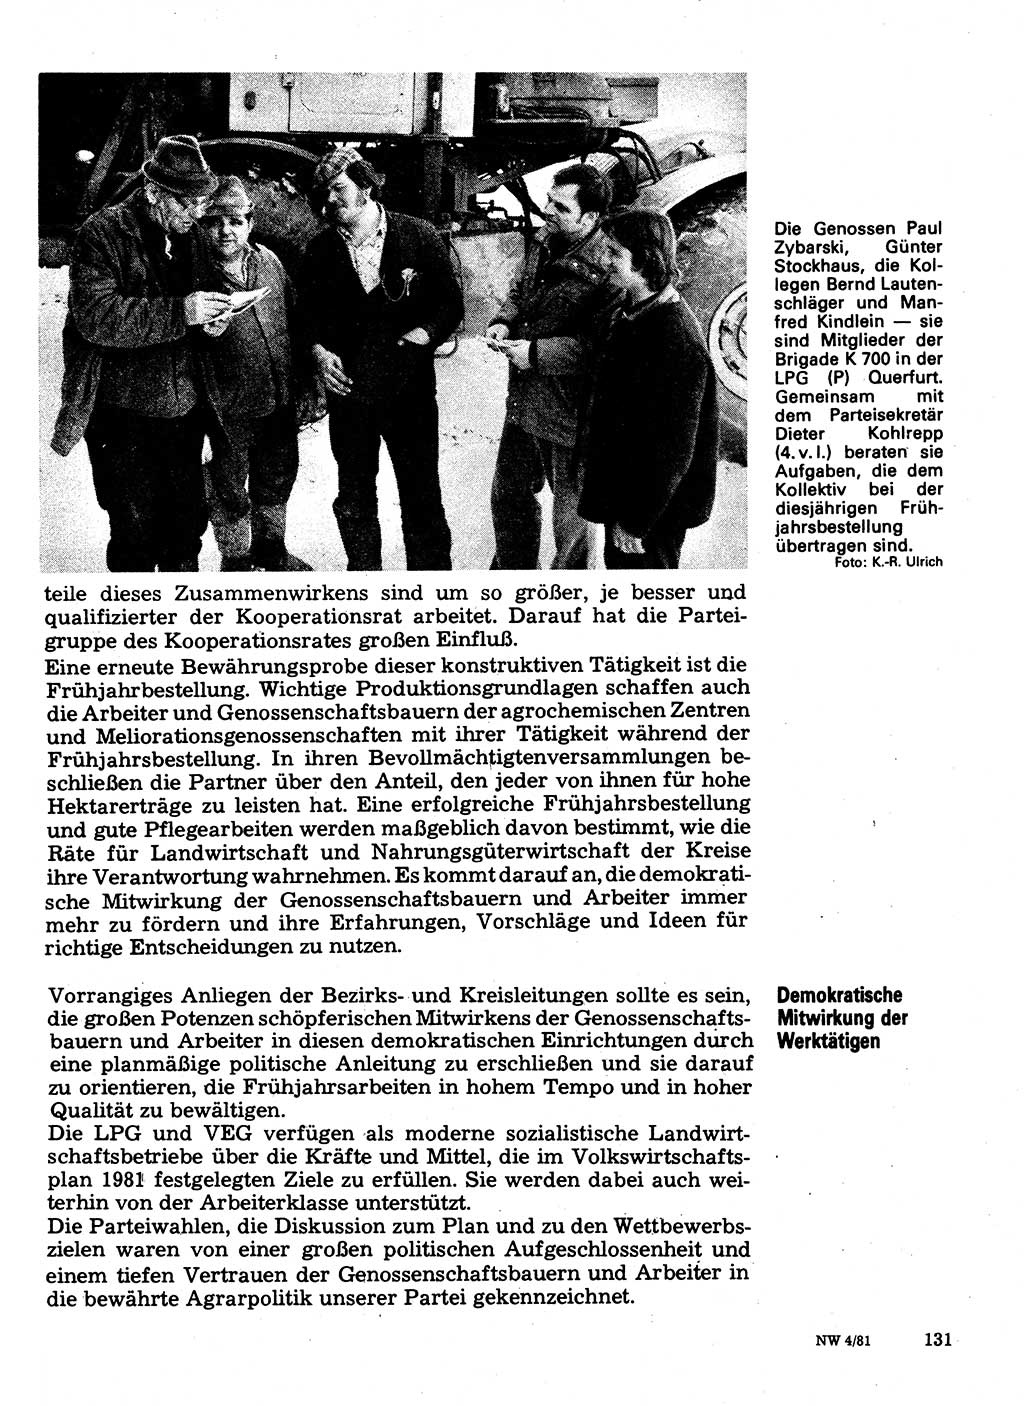 Neuer Weg (NW), Organ des Zentralkomitees (ZK) der SED (Sozialistische Einheitspartei Deutschlands) für Fragen des Parteilebens, 36. Jahrgang [Deutsche Demokratische Republik (DDR)] 1981, Seite 131 (NW ZK SED DDR 1981, S. 131)